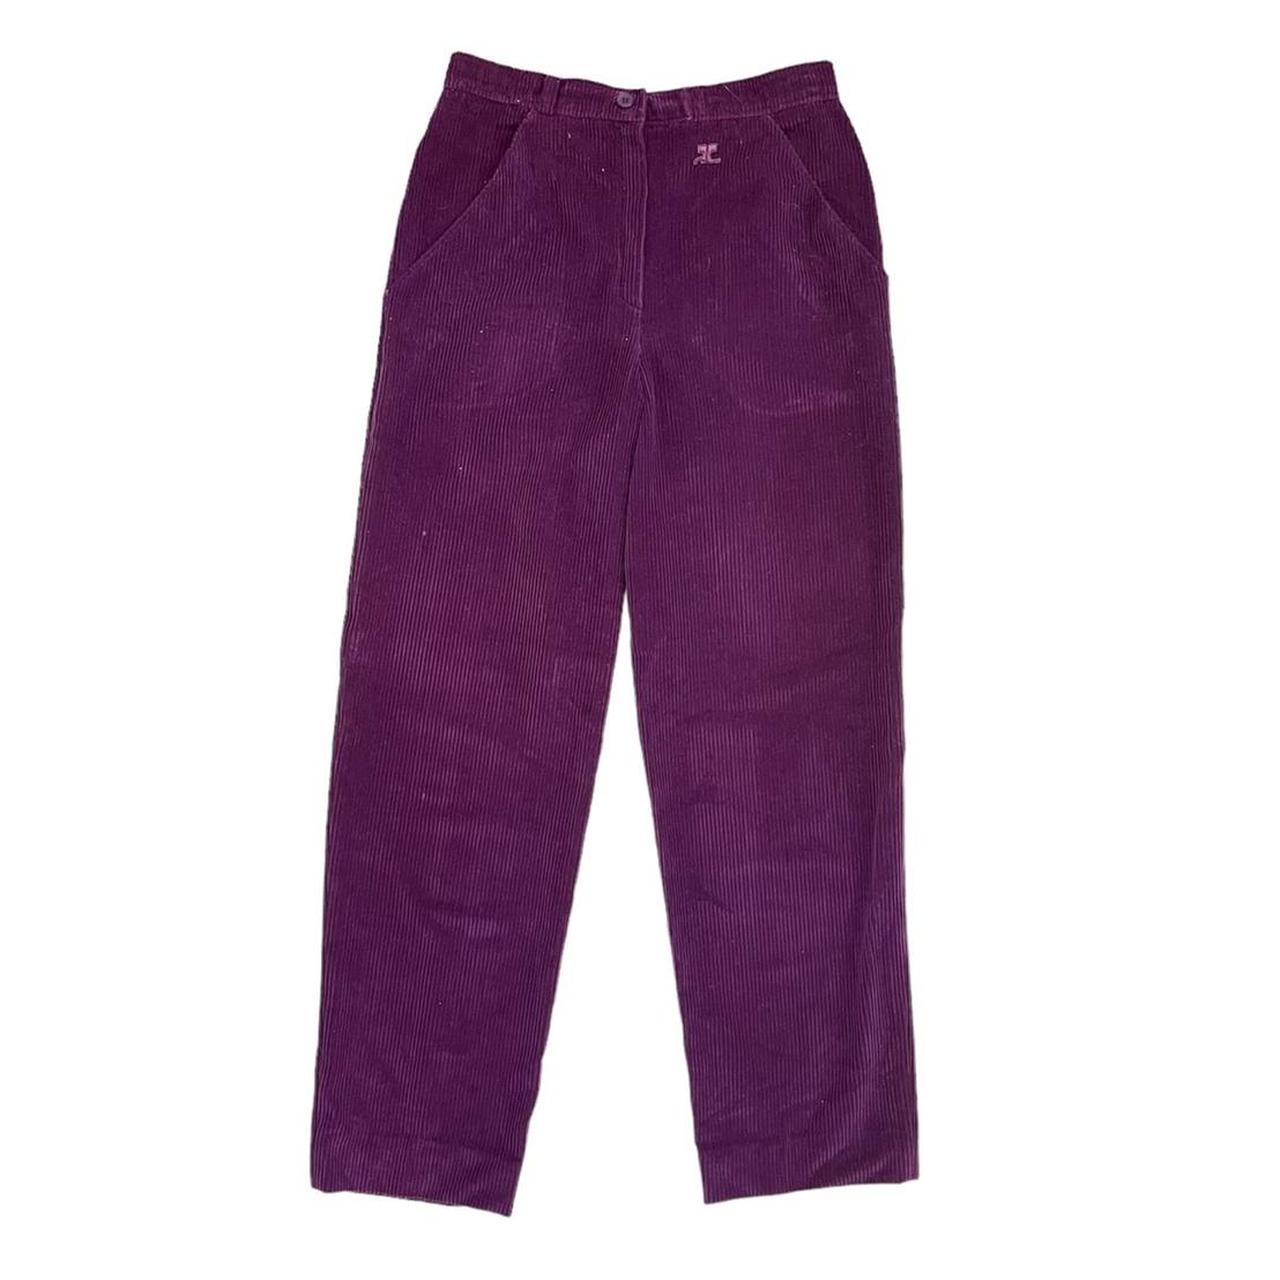 Product Image 3 - Courreges Corduroy Pants. 28” waist

Vintage